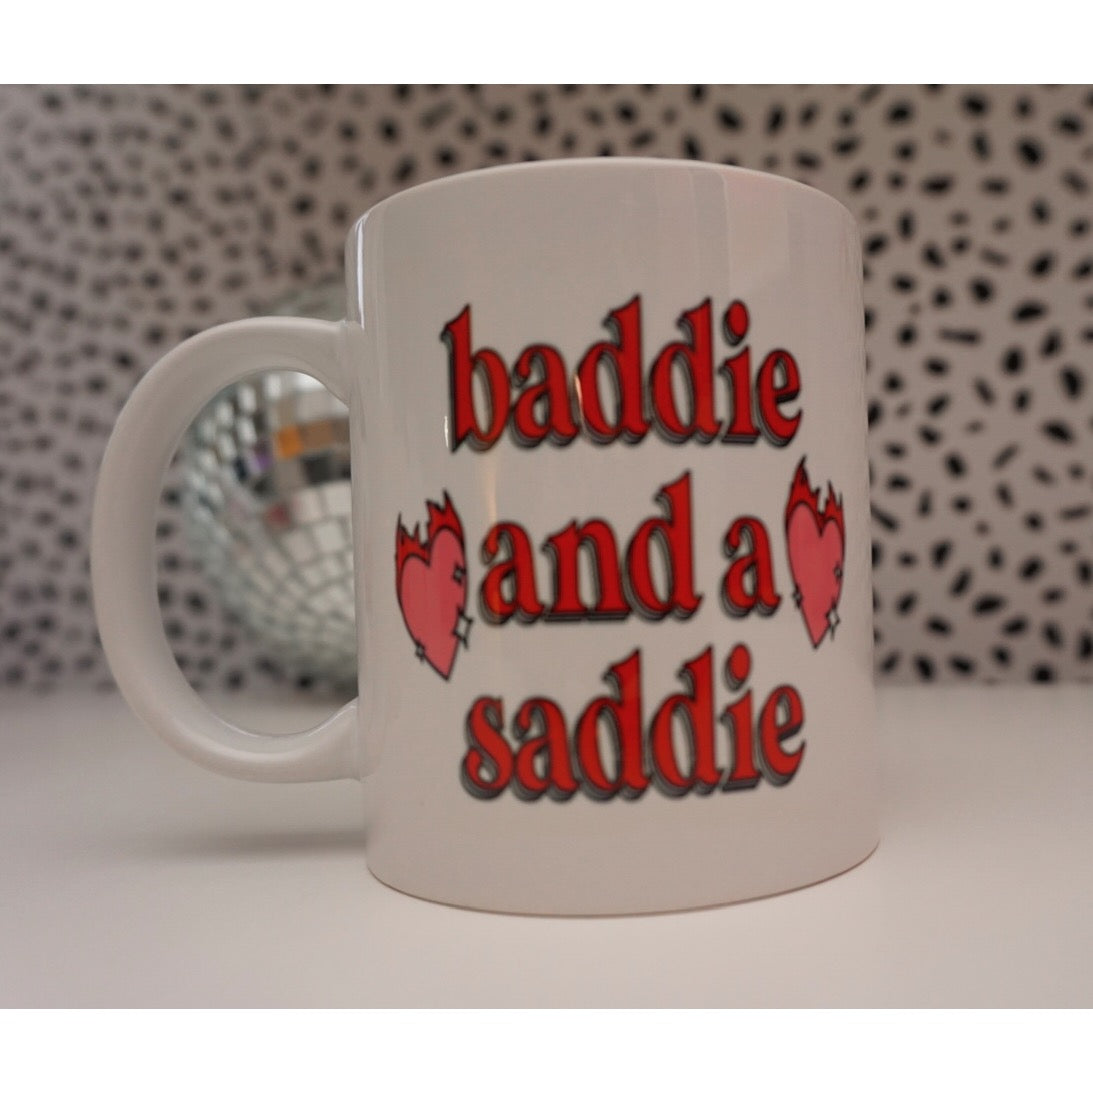 Baddie and a saddie ❤️